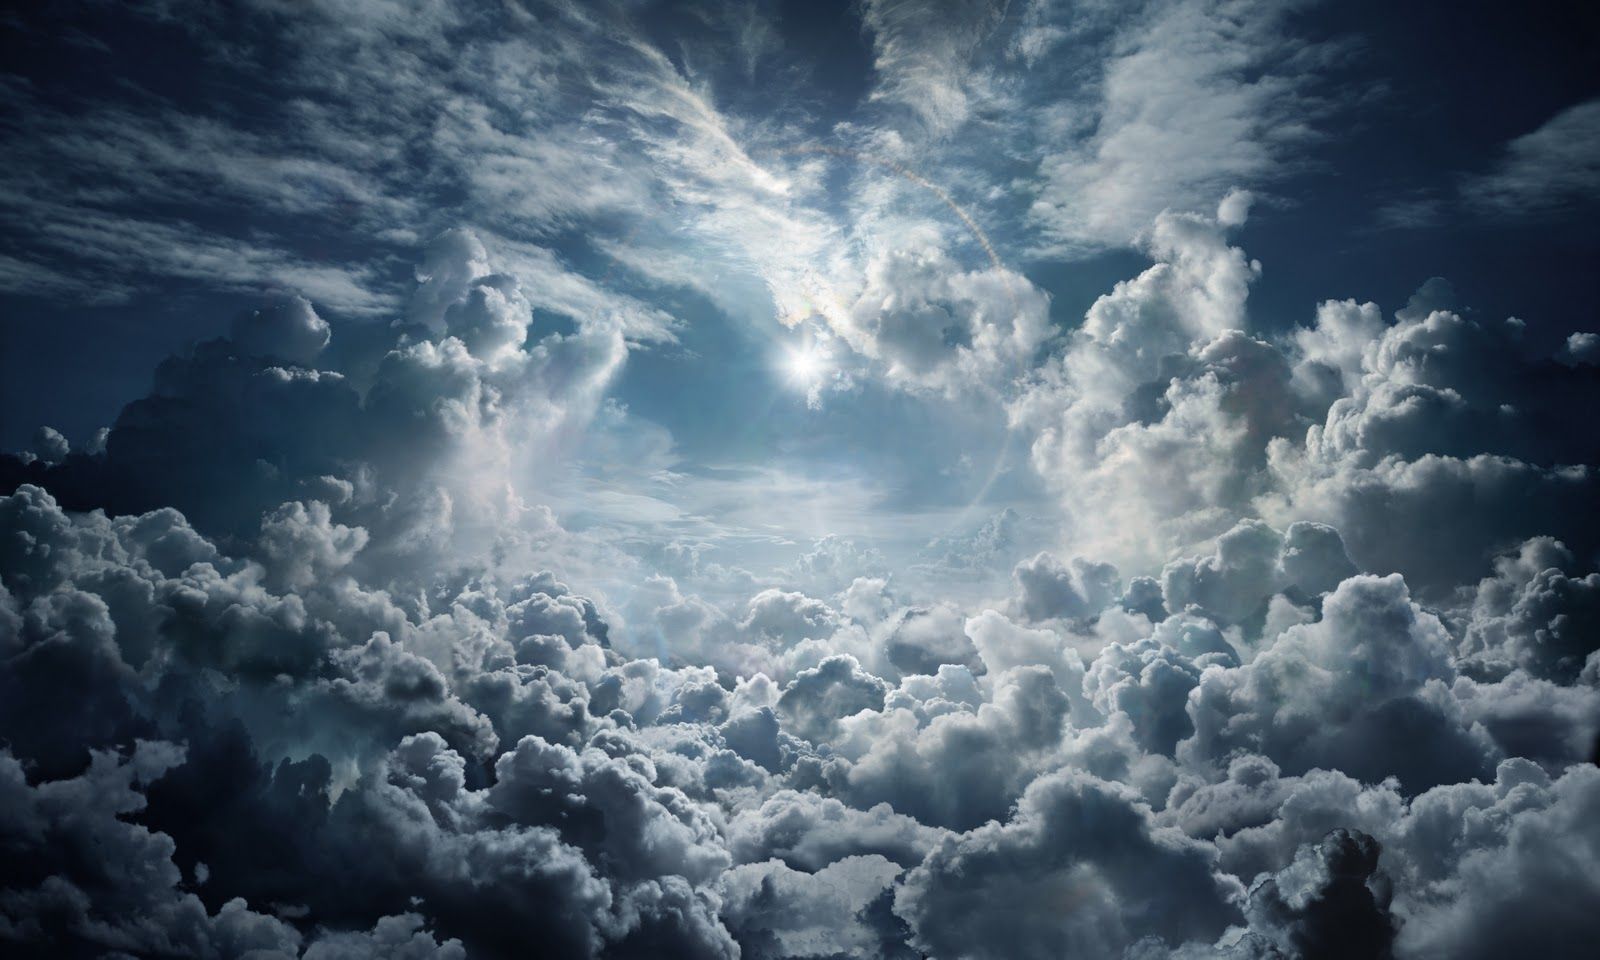 Seb Janiak. The Kingdom, Sun above Clouds, 2008. Clouds, Cloud